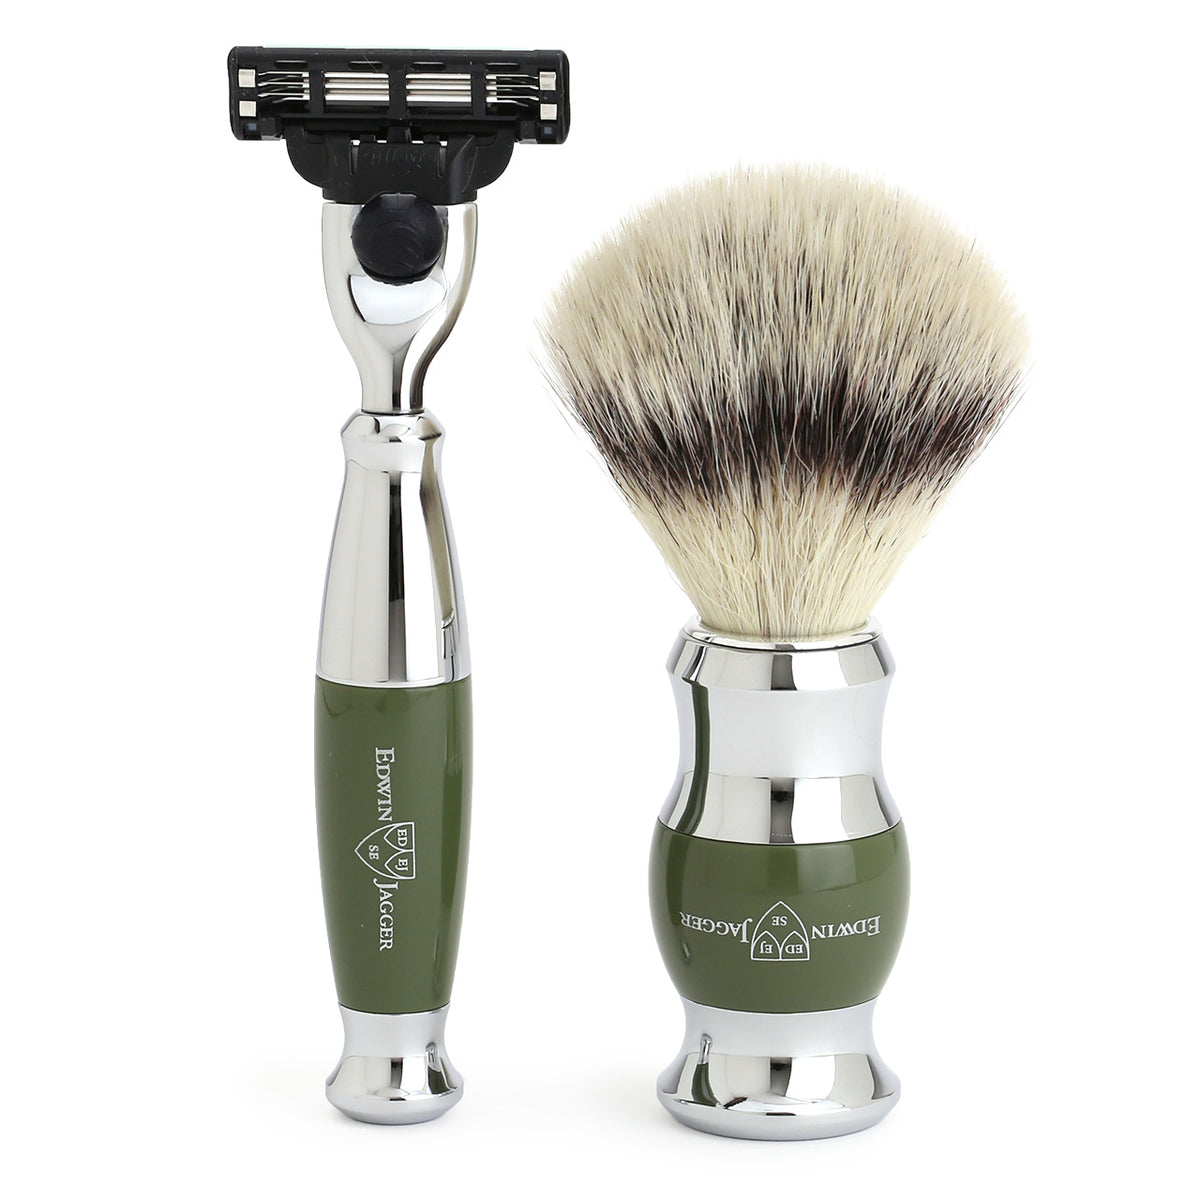 Mach3 Razor and Cruelty-Free Shaving Brush in Olive Green